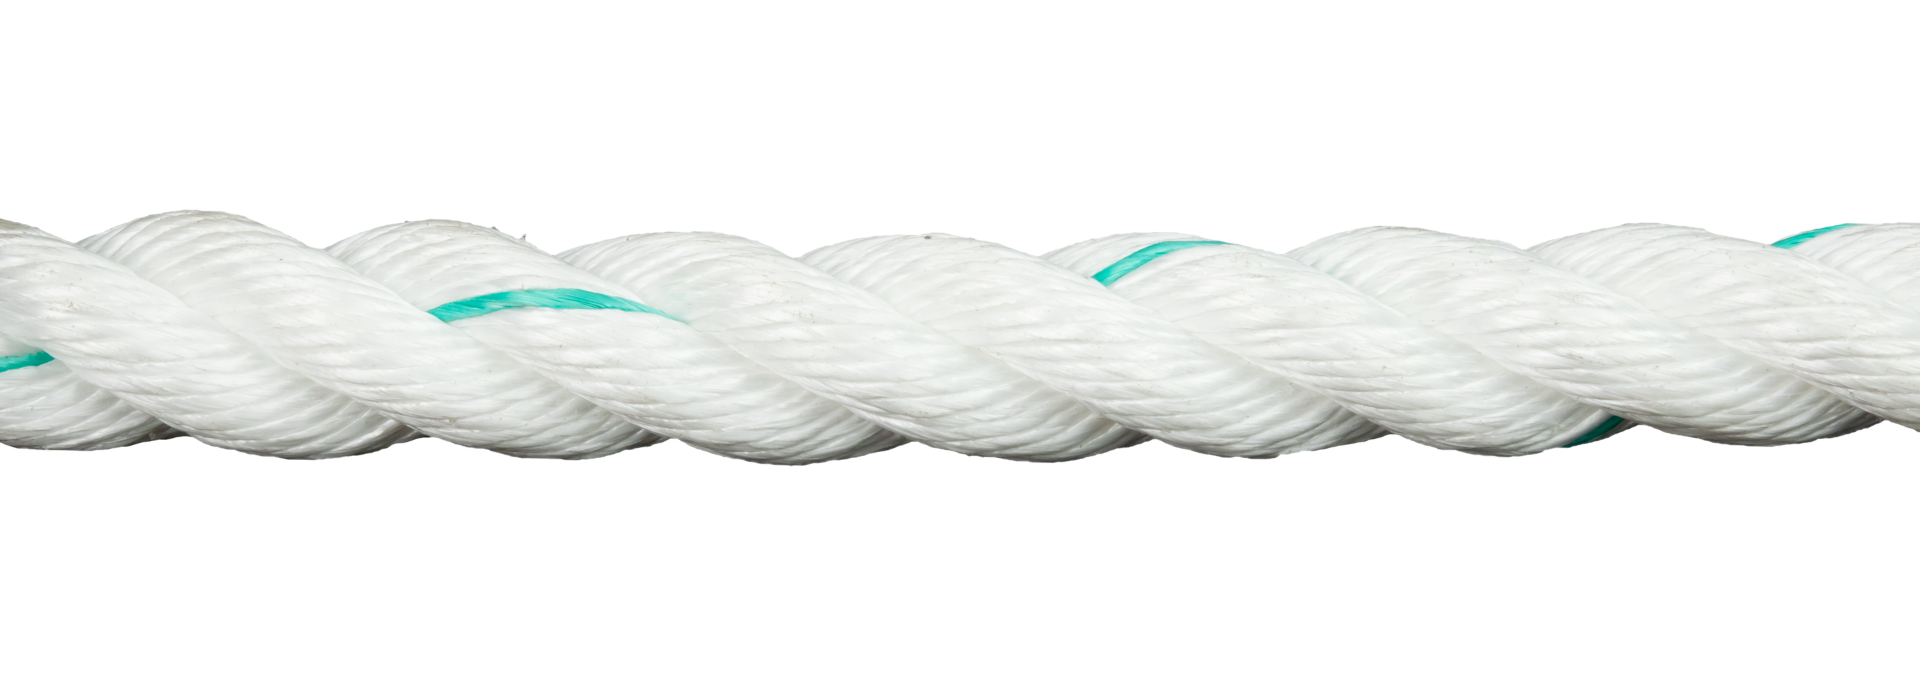 3 strand rope